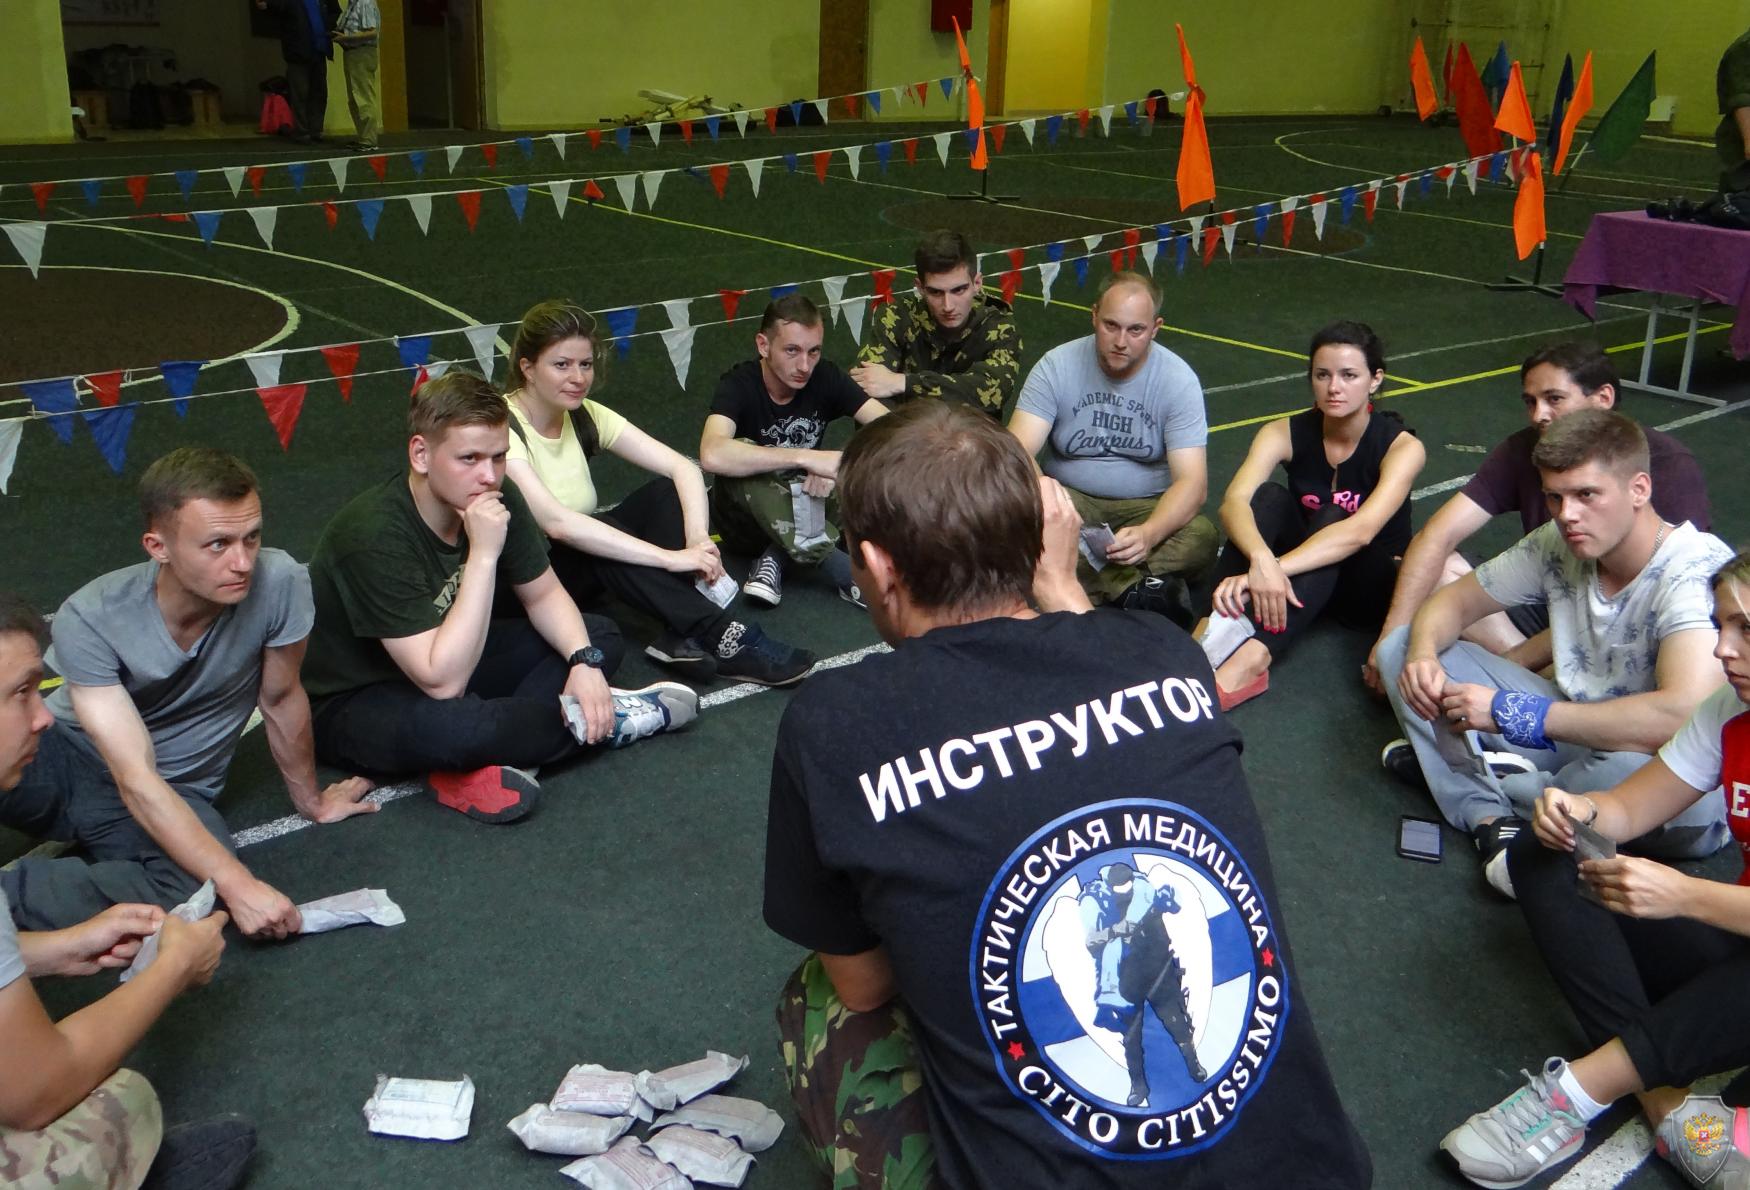 В Московской области завершились учебно-практические курсы для  журналистов «Бастион».